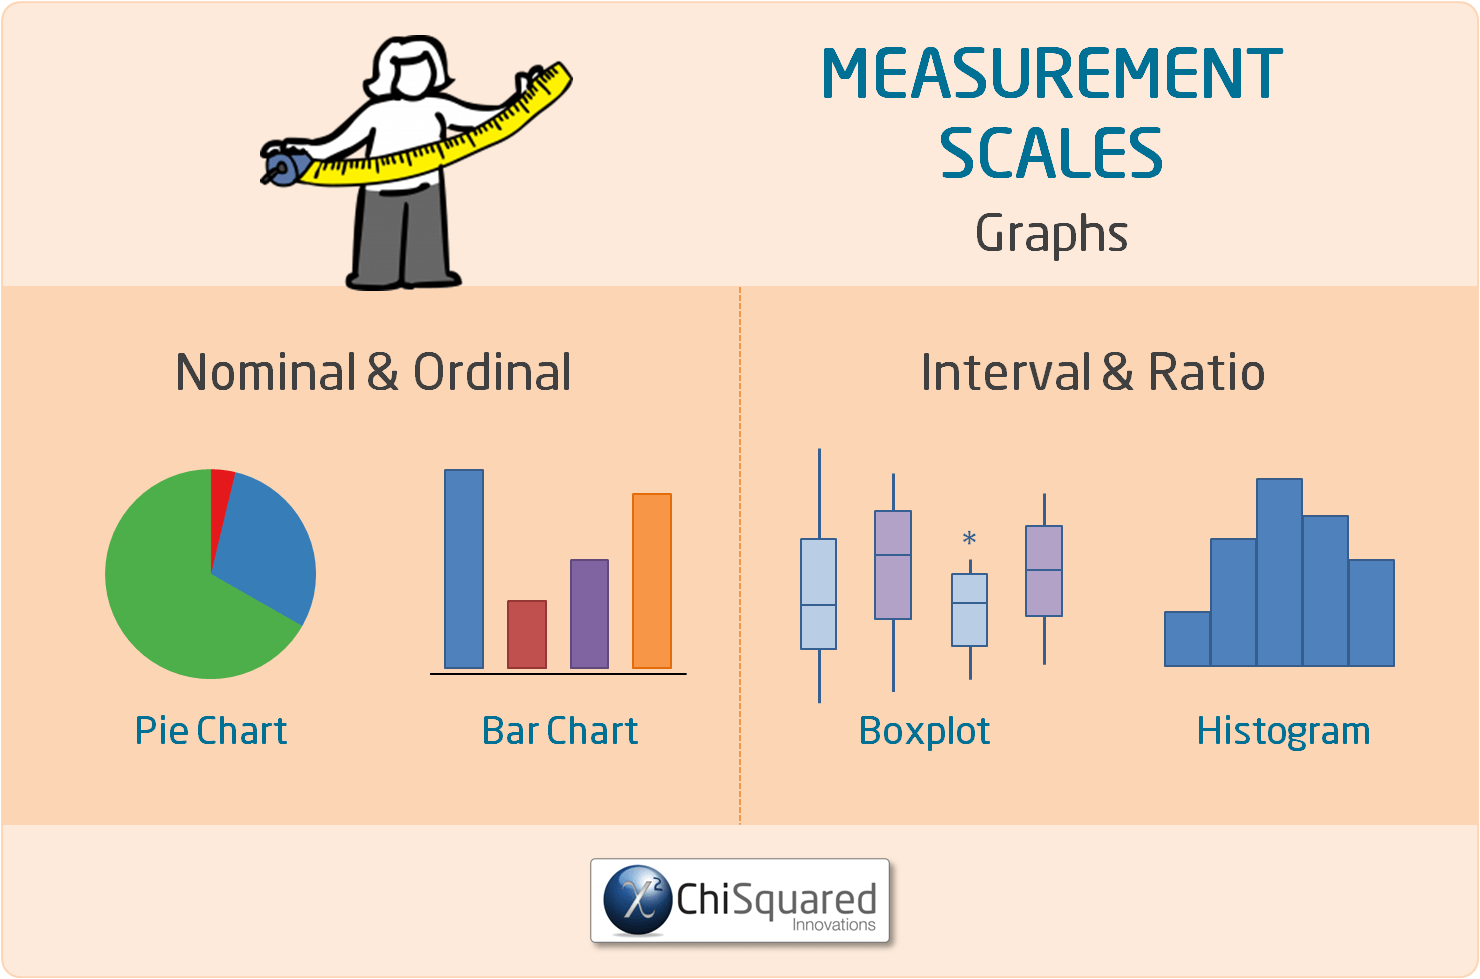 Measurement Scales - Graphs